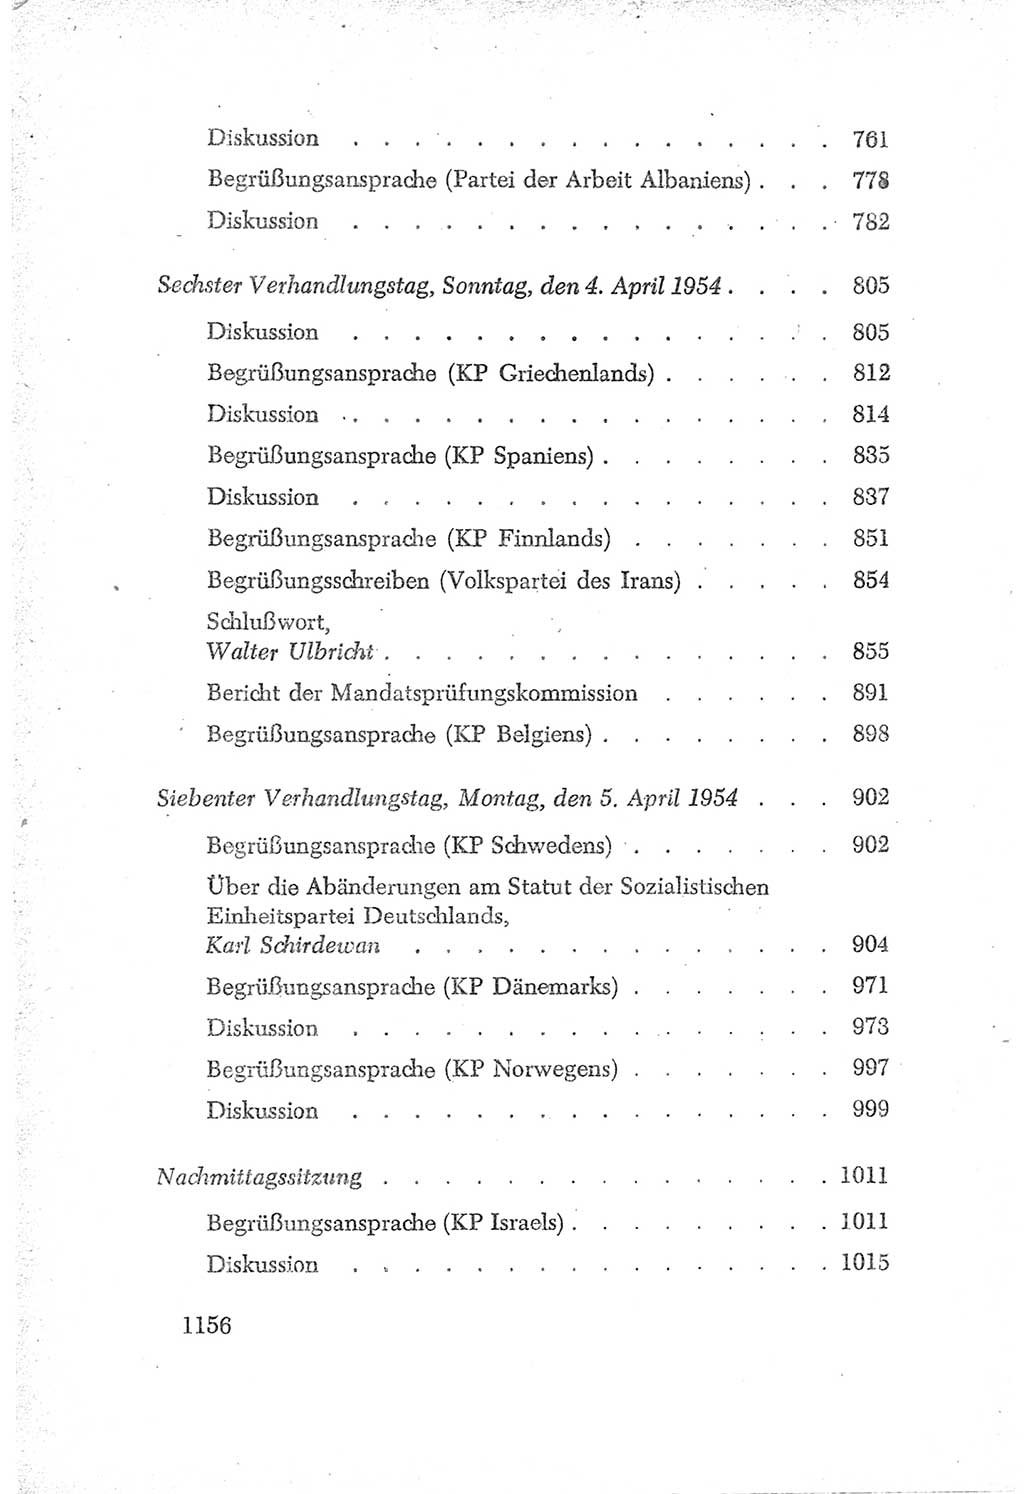 Protokoll der Verhandlungen des Ⅳ. Parteitages der Sozialistischen Einheitspartei Deutschlands (SED) [Deutsche Demokratische Republik (DDR)] 1954, Seite 1156